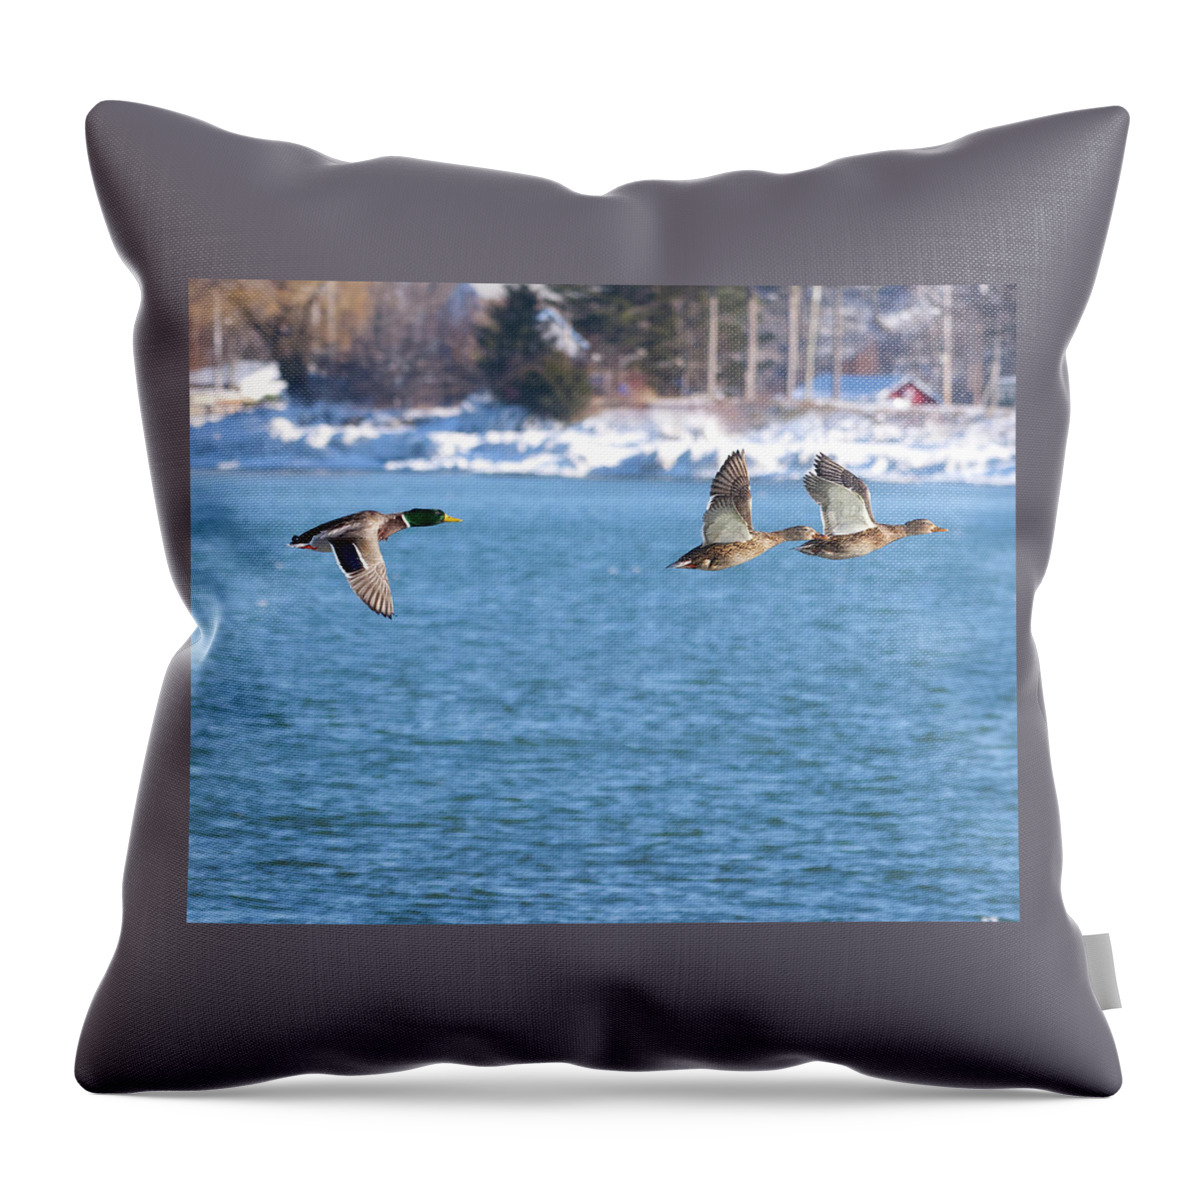 Ducks Throw Pillow featuring the photograph Mallards in Flight by Flinn Hackett